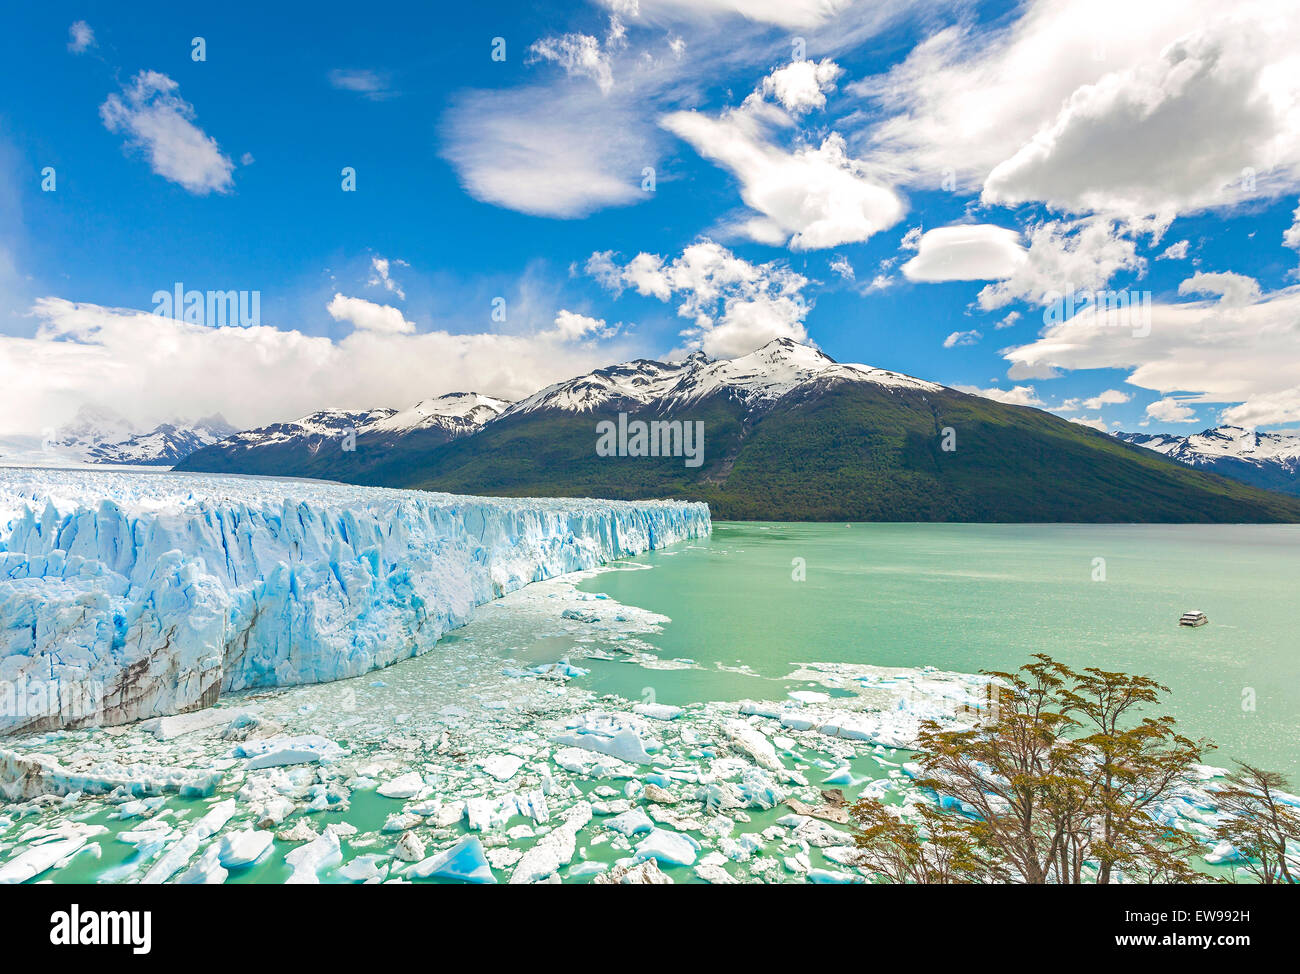 Perito Moreno Glacier in Argentina. Stock Photo